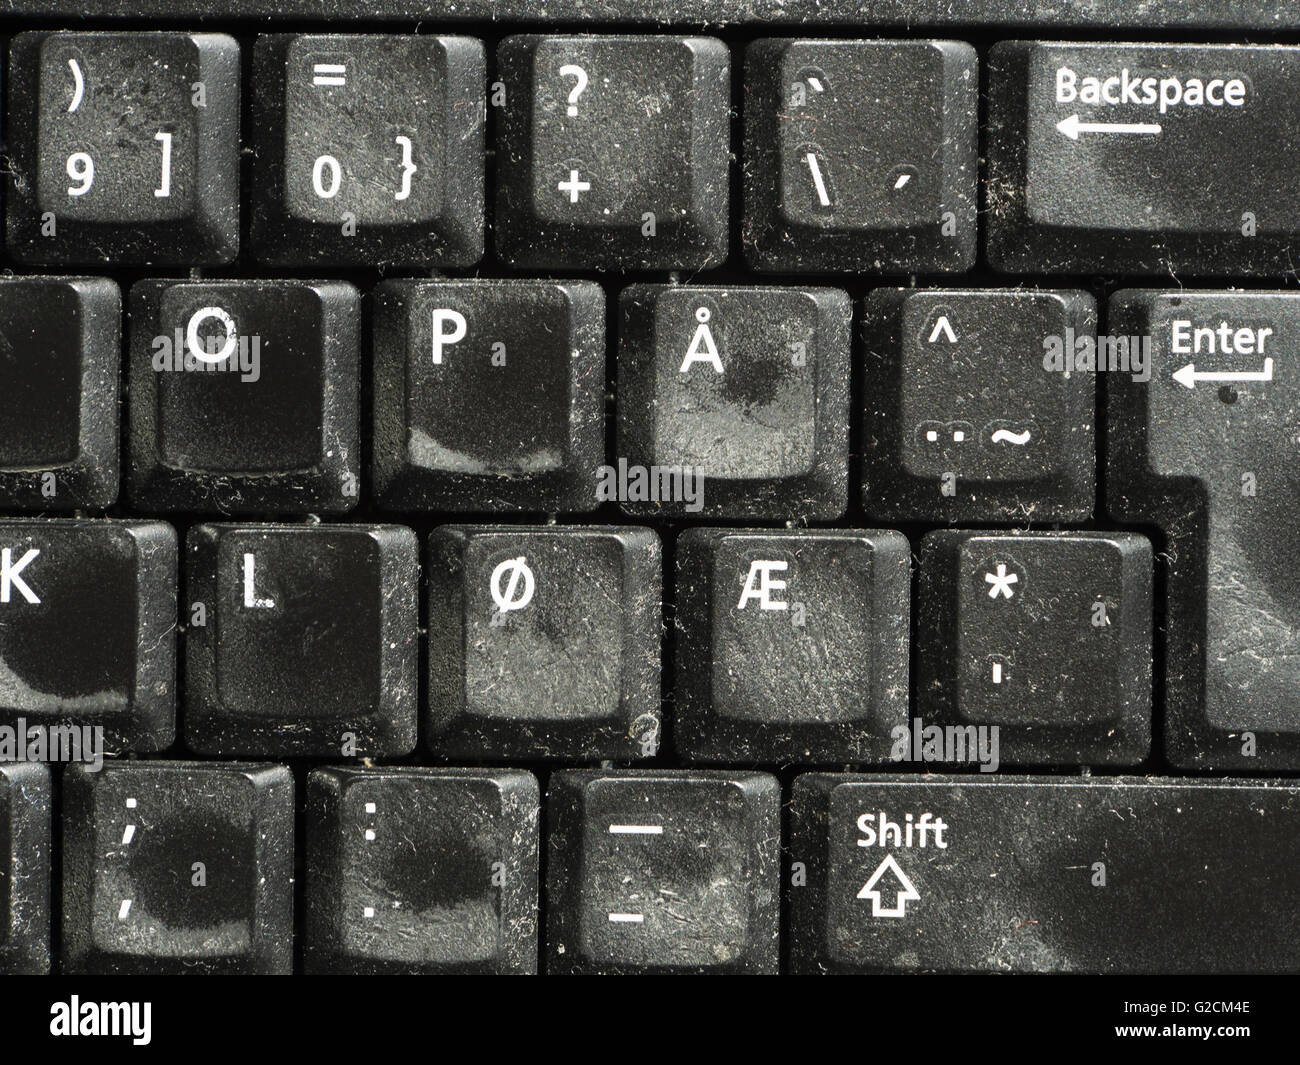 Partielle Nahaufnahme von einem staubigen alten Computer-Tastatur mit  Sonderzeichen Æ Ø å des norwegischen Alphabets an ihrer Stelle  Stockfotografie - Alamy